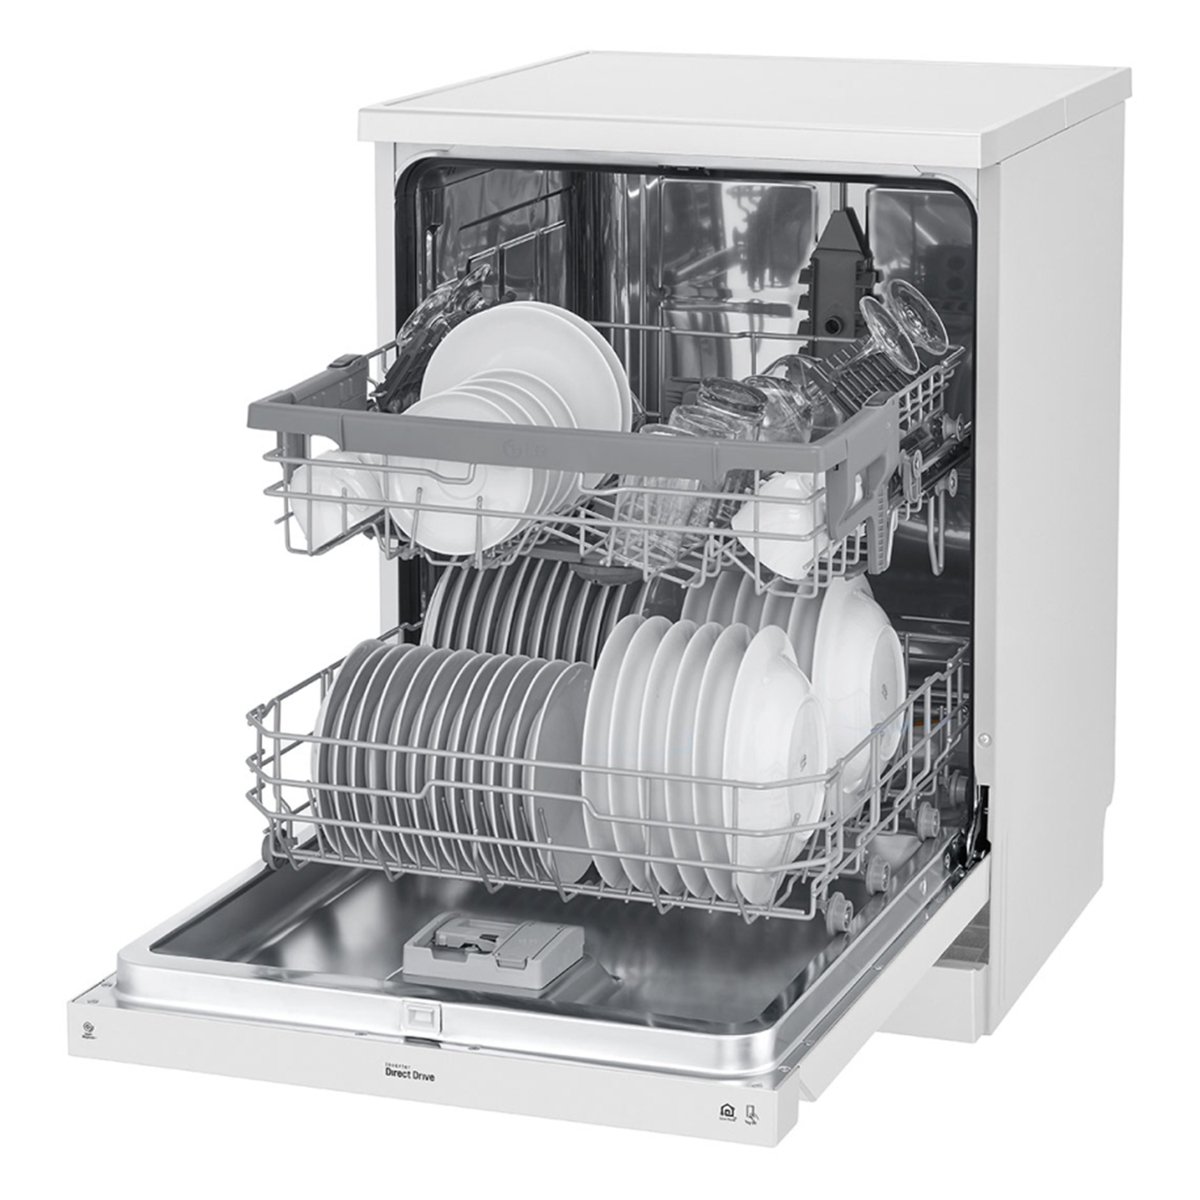 LG QuadWash Dishwasher DFB512FW 8Programs